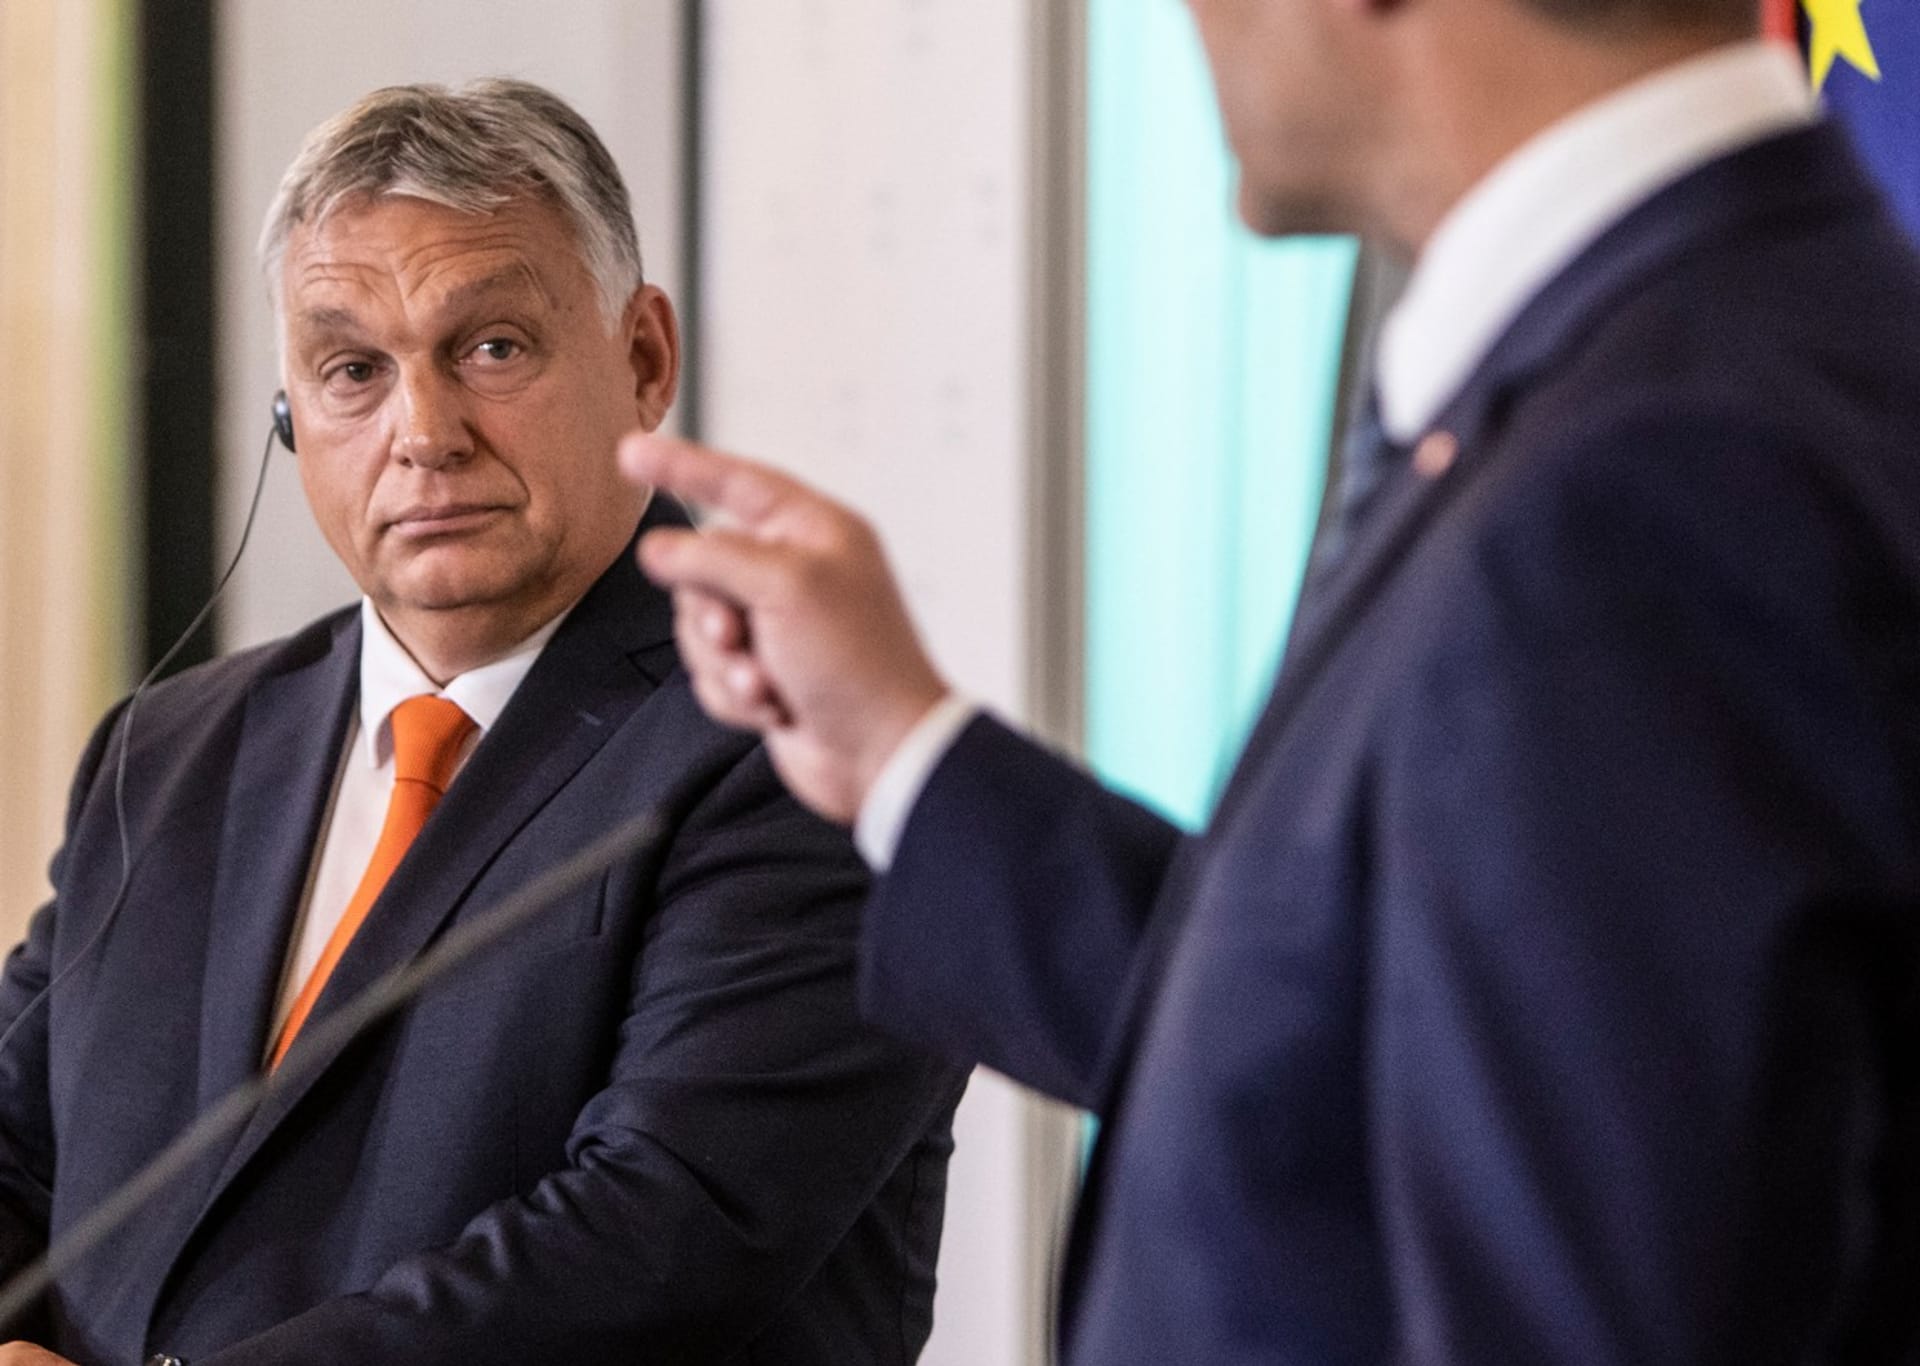 Maďarský premiér Viktor Orbán při návštěvě Rakouska